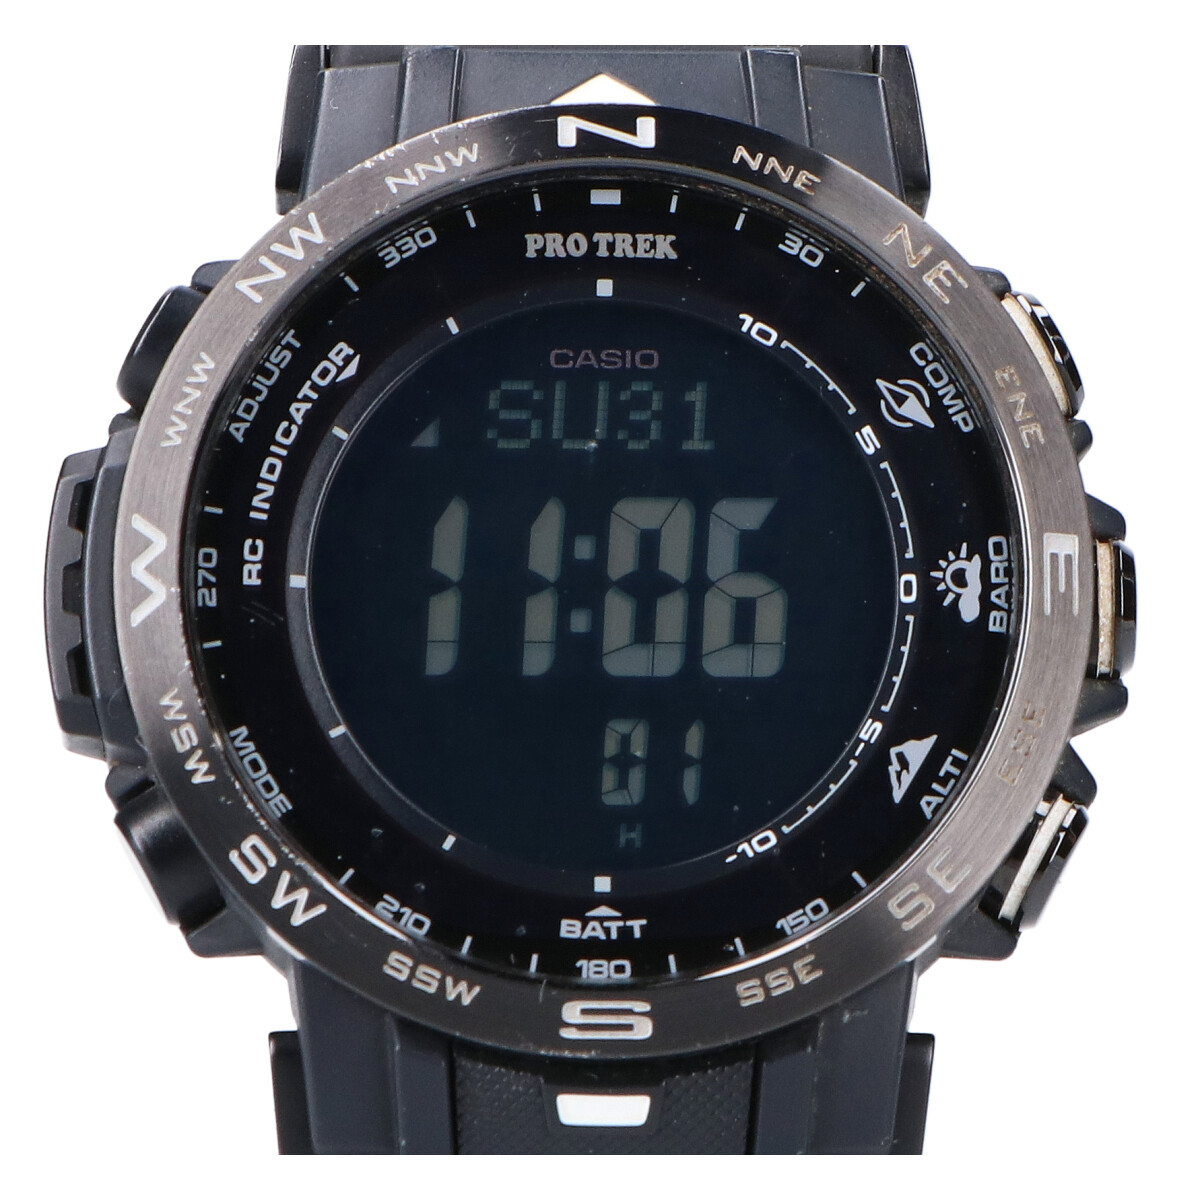 カシオのPRW-30Y-1BJF プロトレックマルチバンド6タフソーラー電波腕時計の買取実績です。